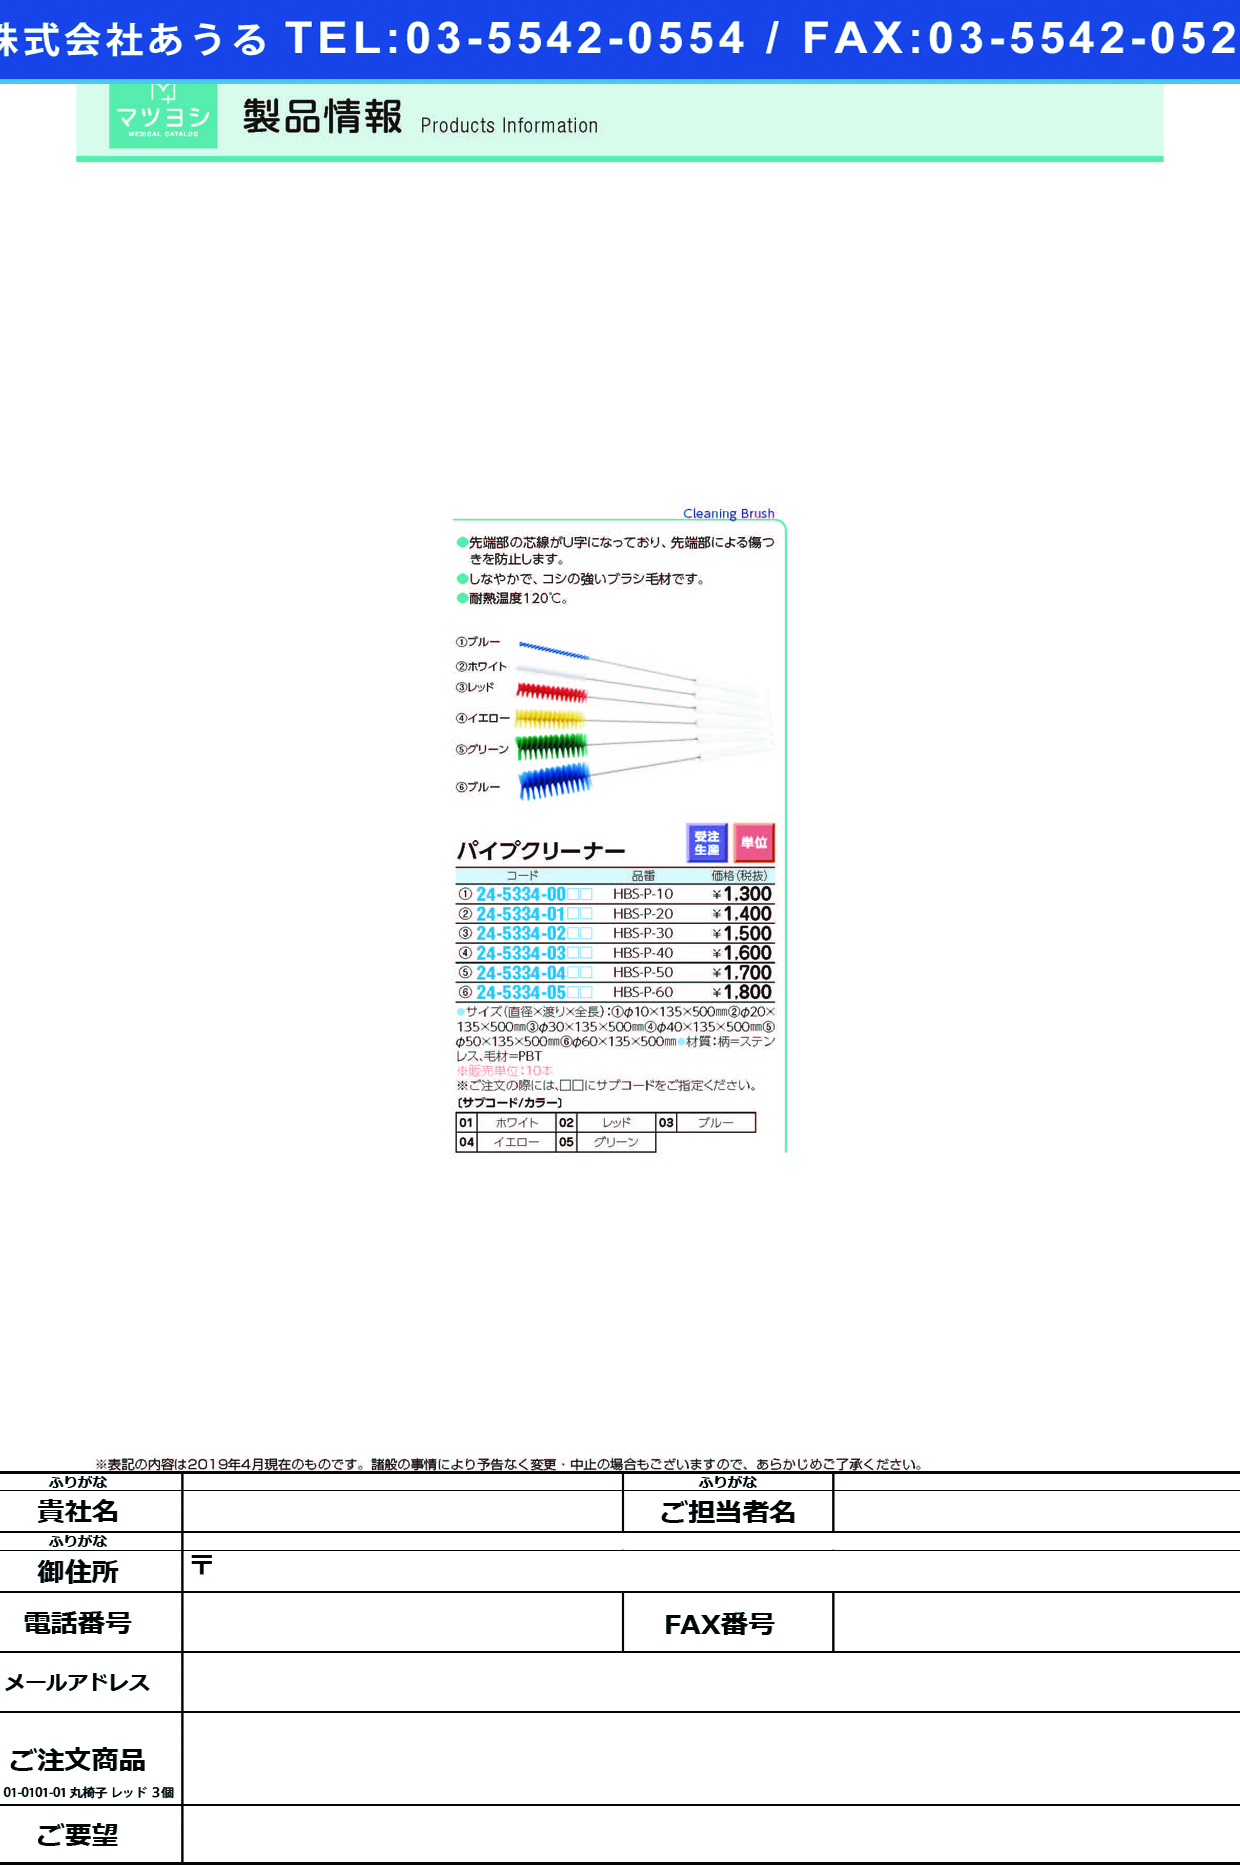 (24-5334-03)パイプクリーナー HBS-P-40 ﾊﾟｲﾌﾟｸﾘｰﾅｰ ホワイト【10本単位】【2019年カタログ商品】